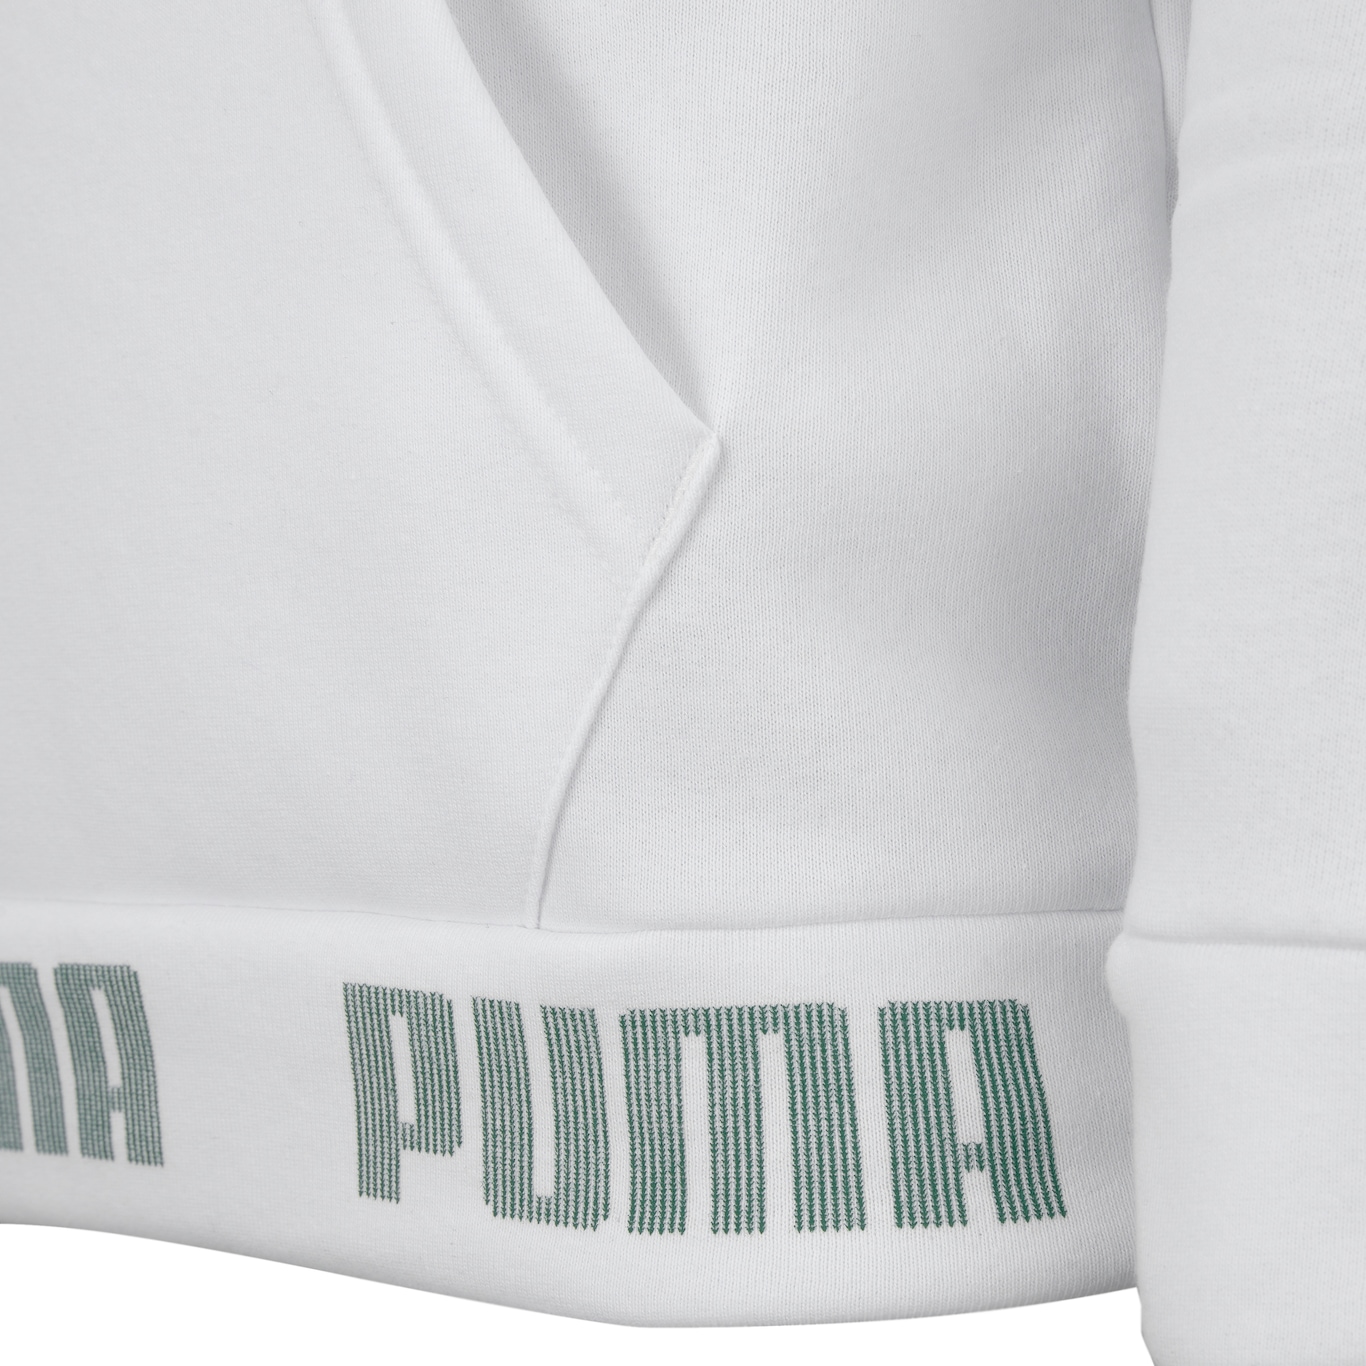 Camiseta do Palmeiras Cult 20 Puma - Masculina